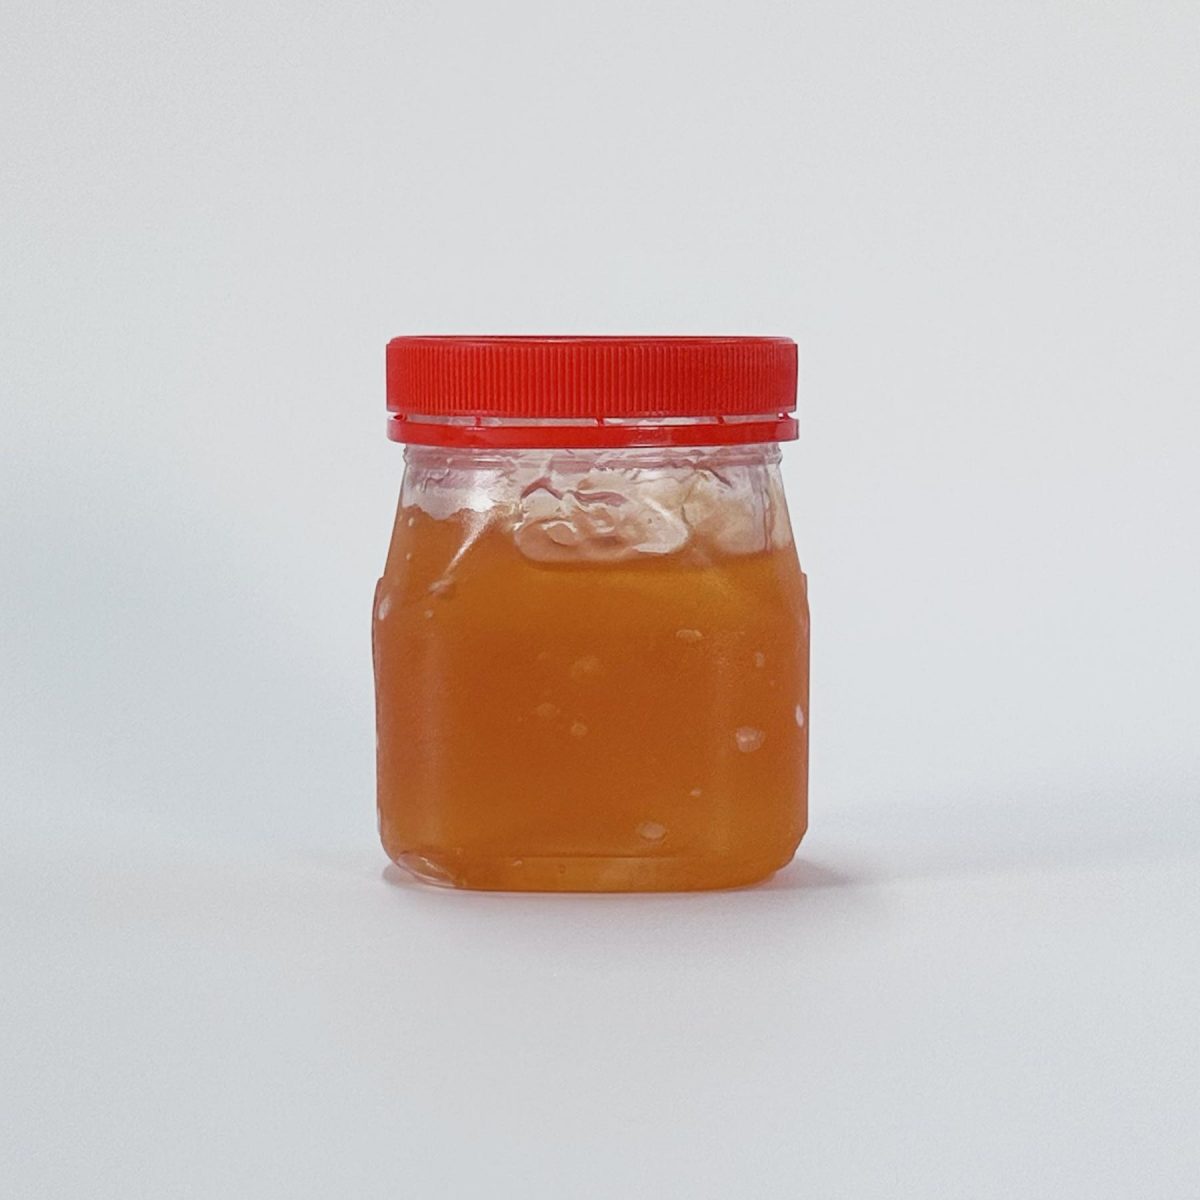 bake-king-apricot-gel-200g-img-02